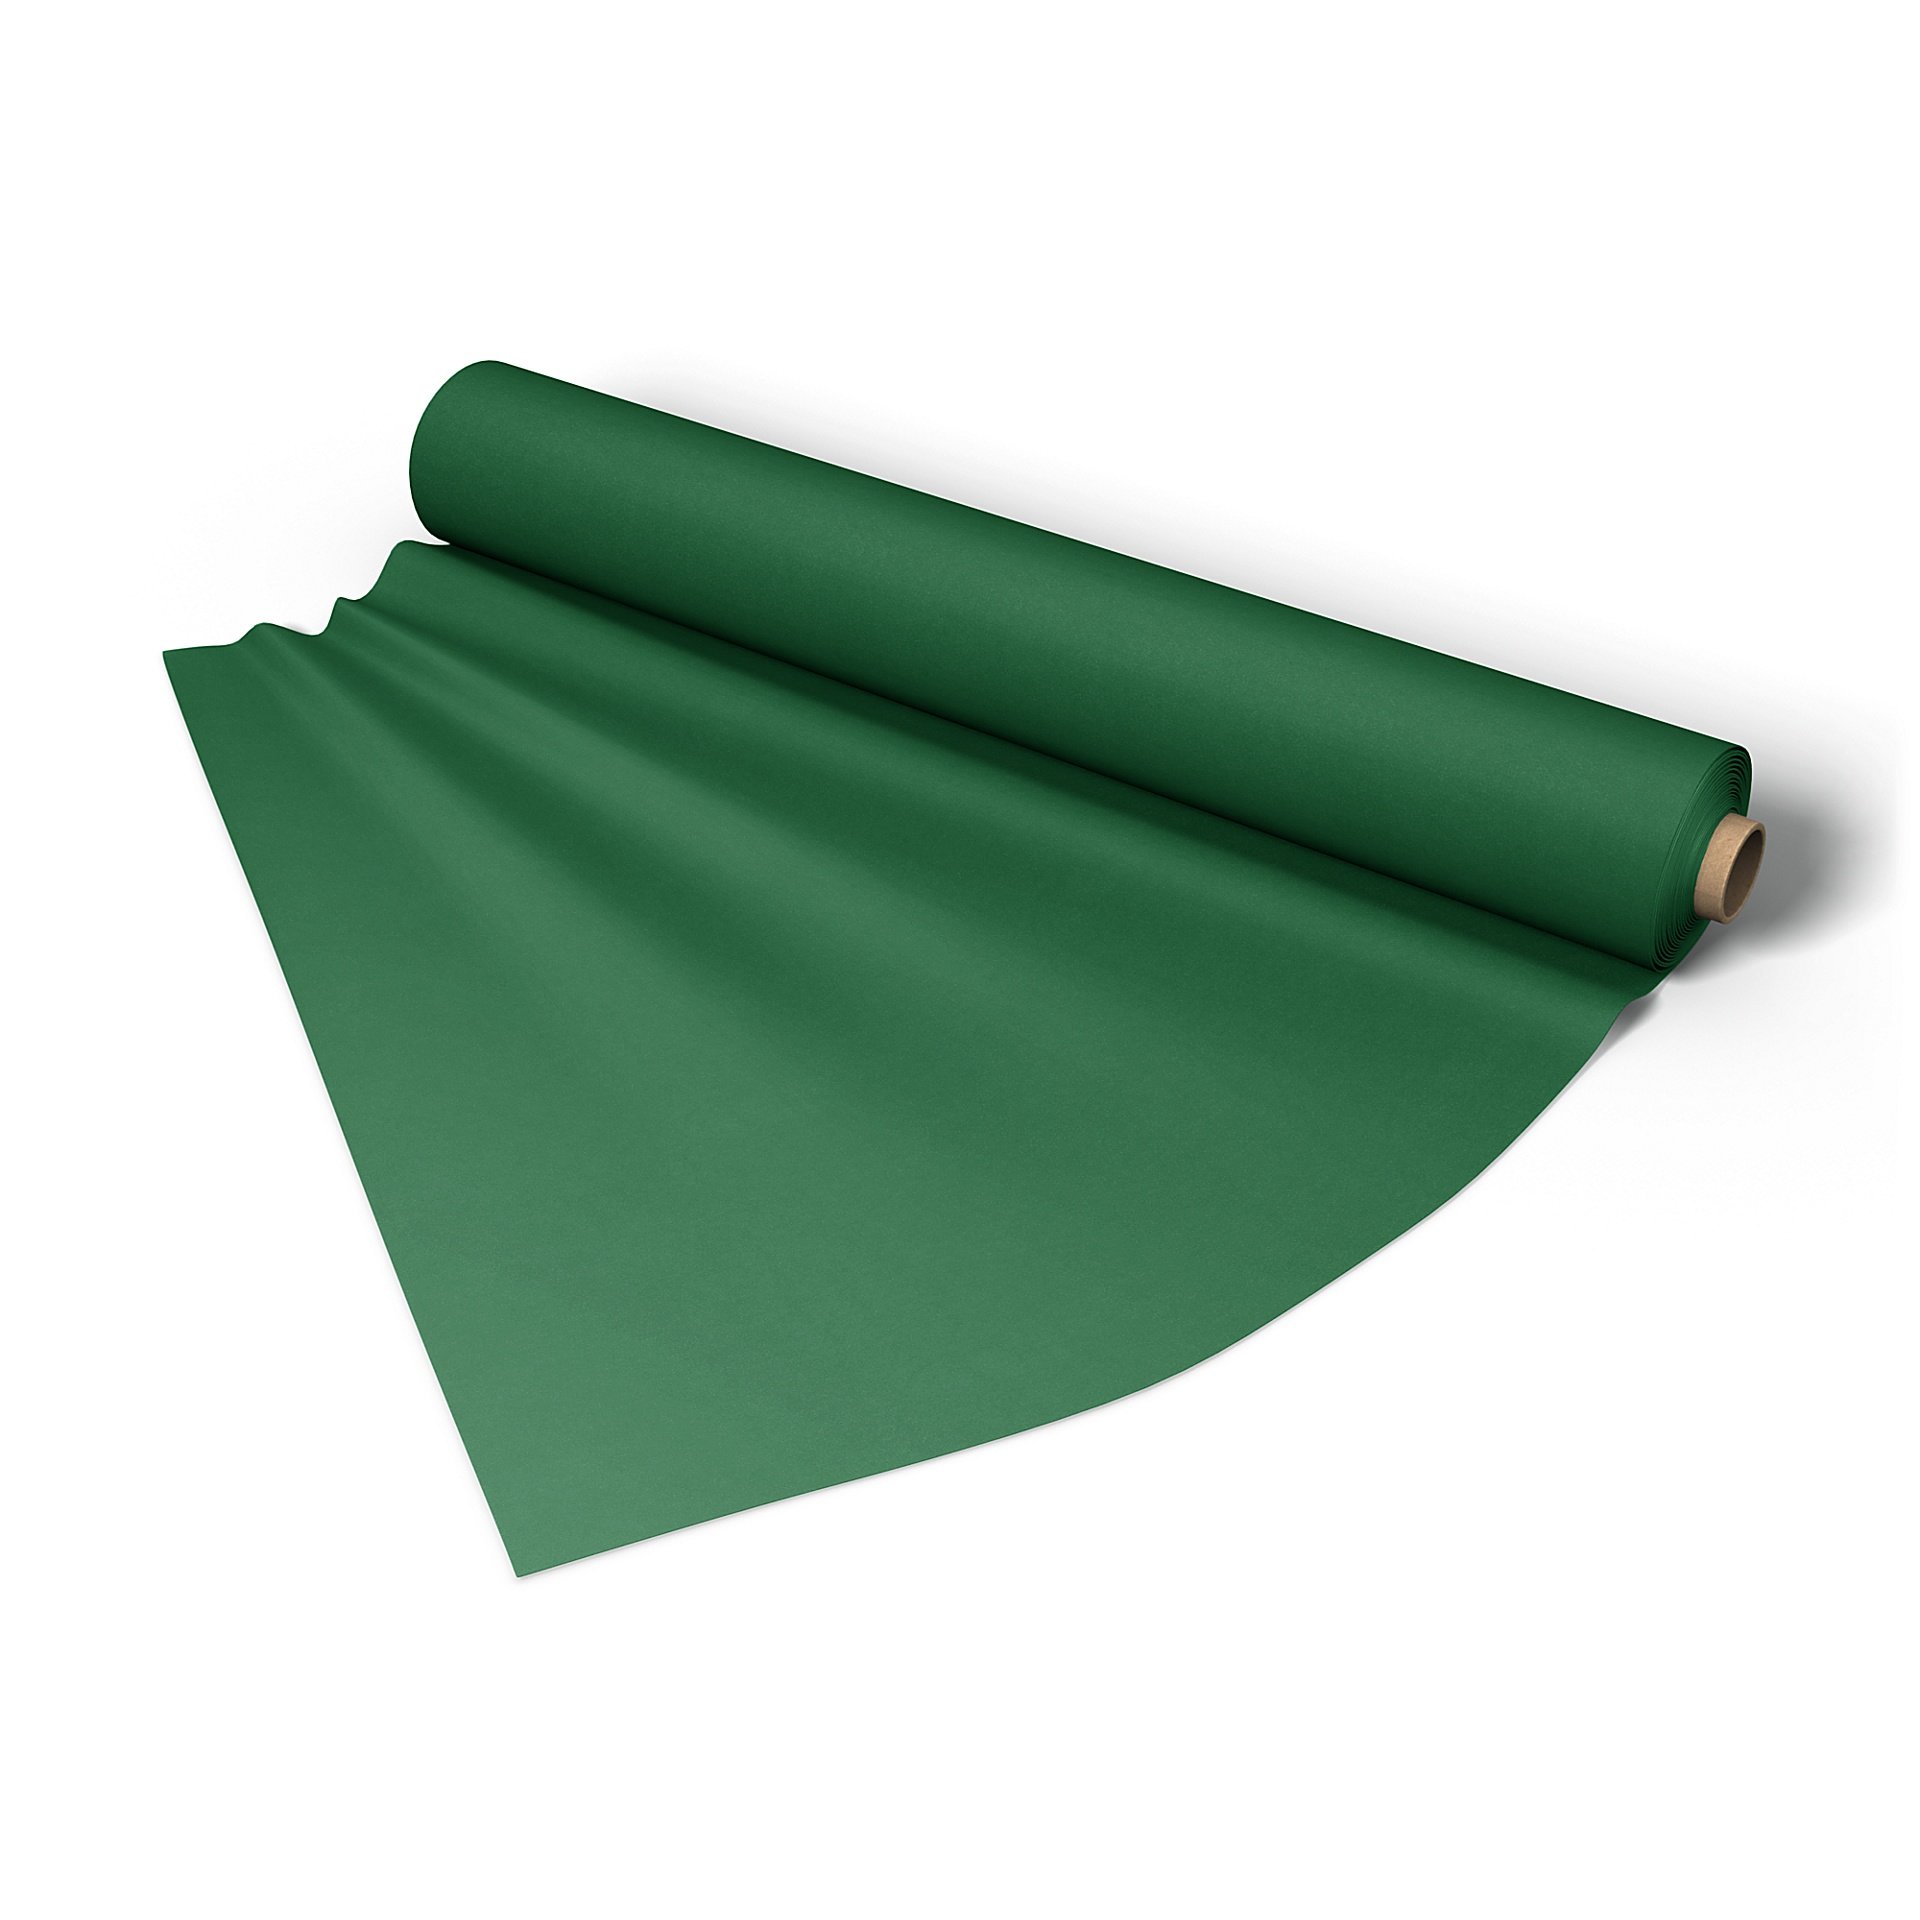 Fabric per metre, Abundant Green, Velvet - Bemz